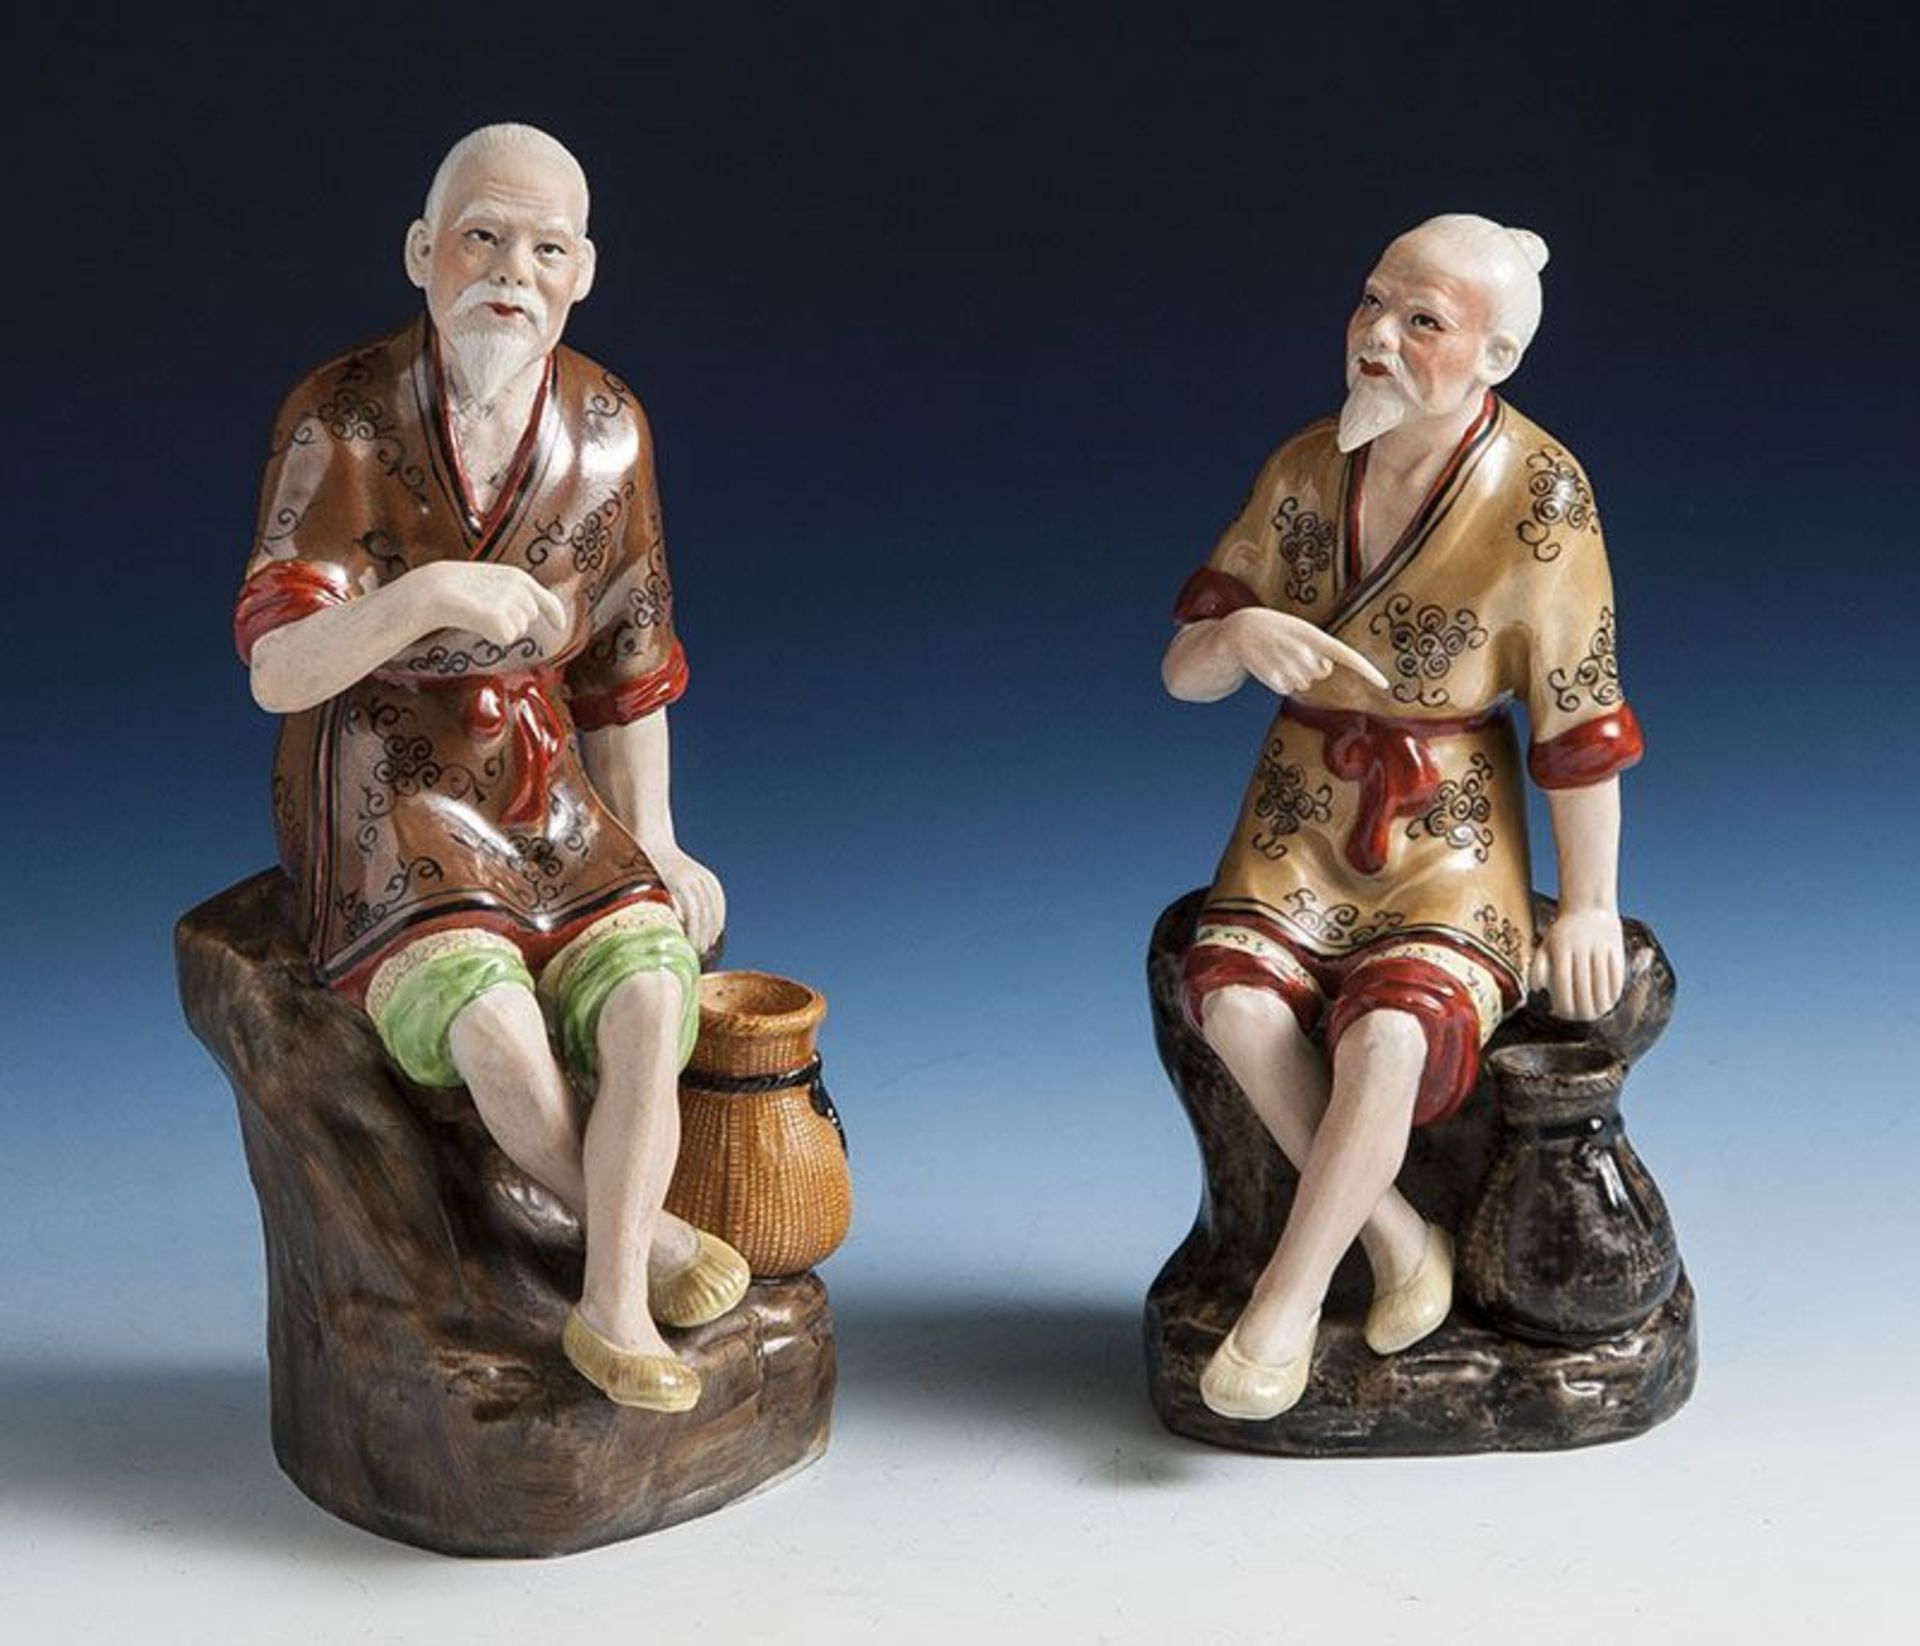 2 Porzellanfiguren, Japan, Meiji-Periode. Darstellung eines auf einem Stein sitzenden älteren Mannes